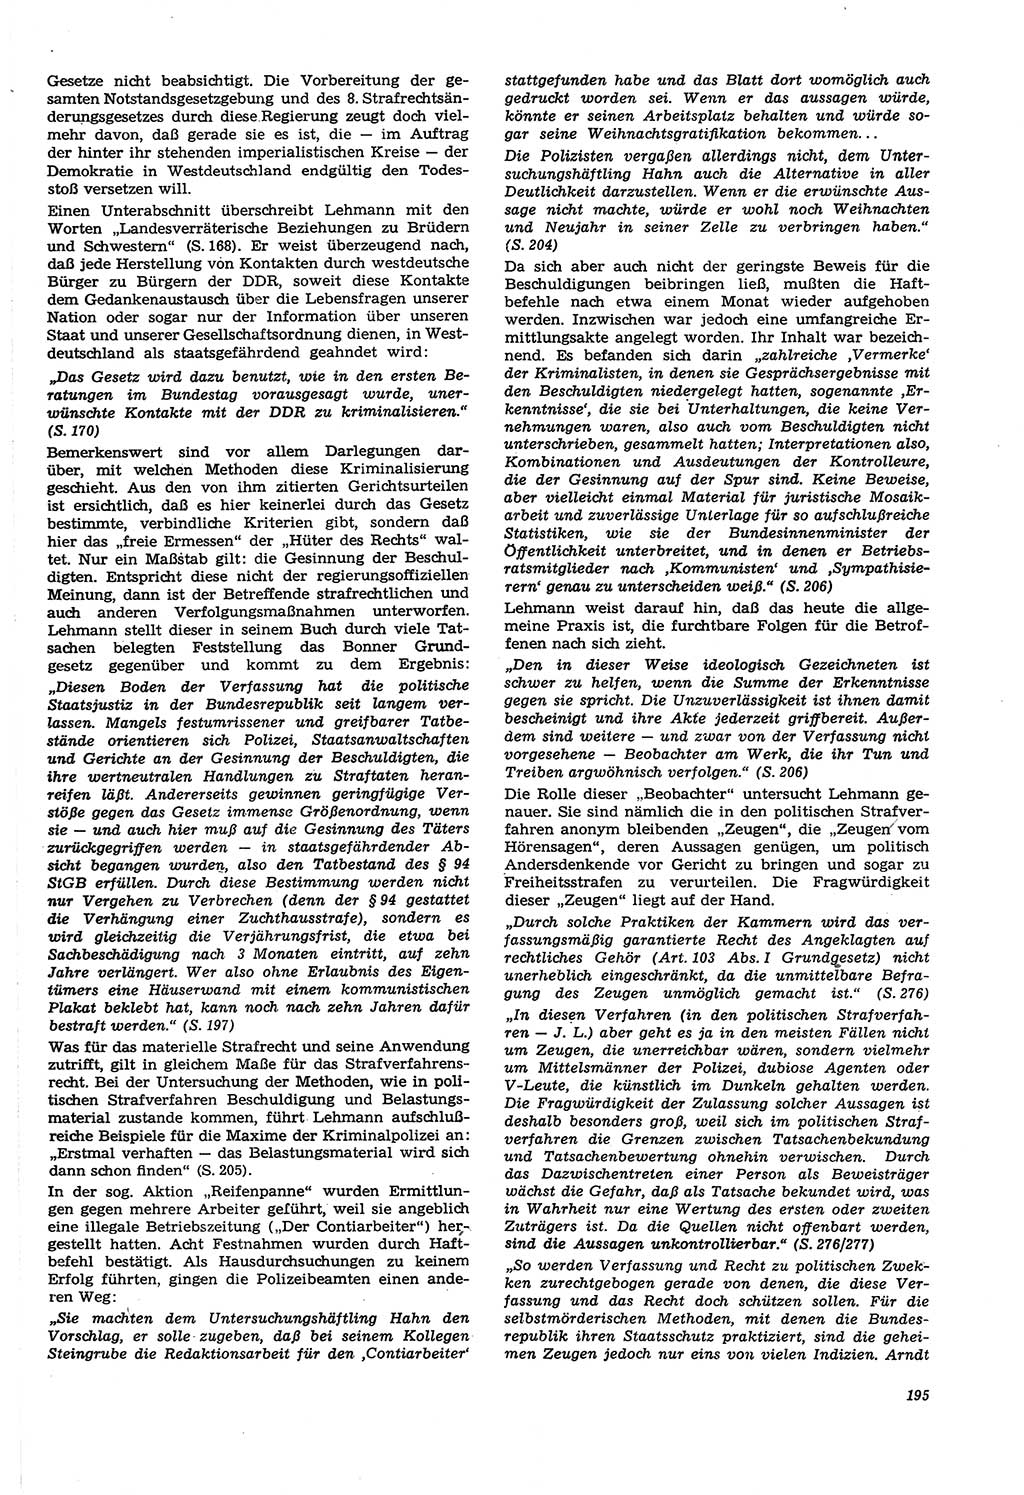 Neue Justiz (NJ), Zeitschrift für Recht und Rechtswissenschaft [Deutsche Demokratische Republik (DDR)], 21. Jahrgang 1967, Seite 195 (NJ DDR 1967, S. 195)